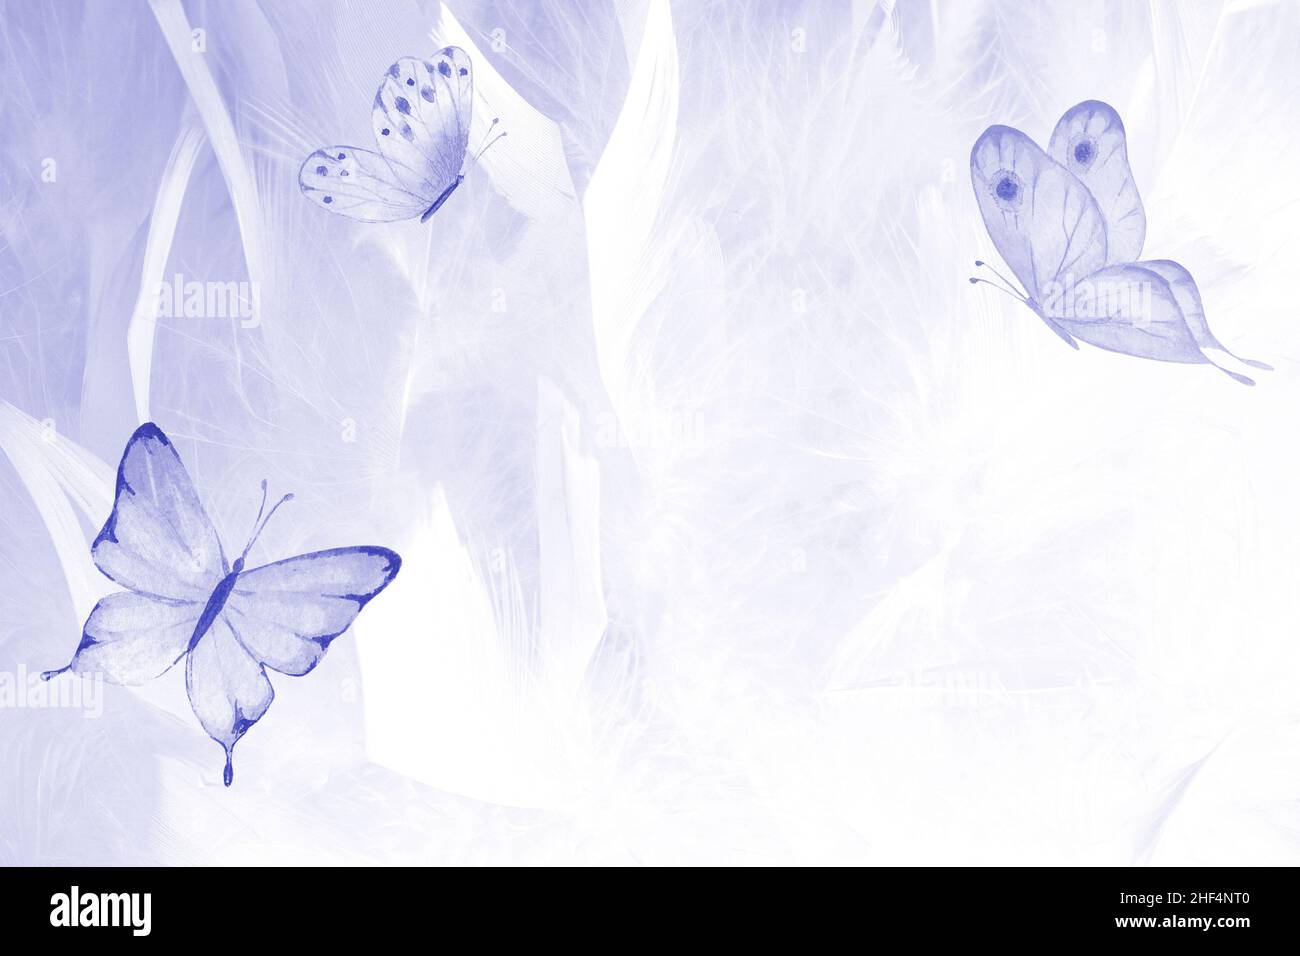 Những họa tiết bướm màu tím Peri trên nền trắng trông vô cùng tuyệt đẹp và đầy mơ mộng. Hãy khám phá sự tinh tế và hiện đại của thiết kế trang trí này, để cho những bướm tím bảy cánh phủ khắp khung hình truyền tải thông điệp tình yêu và sự lãng mạn!